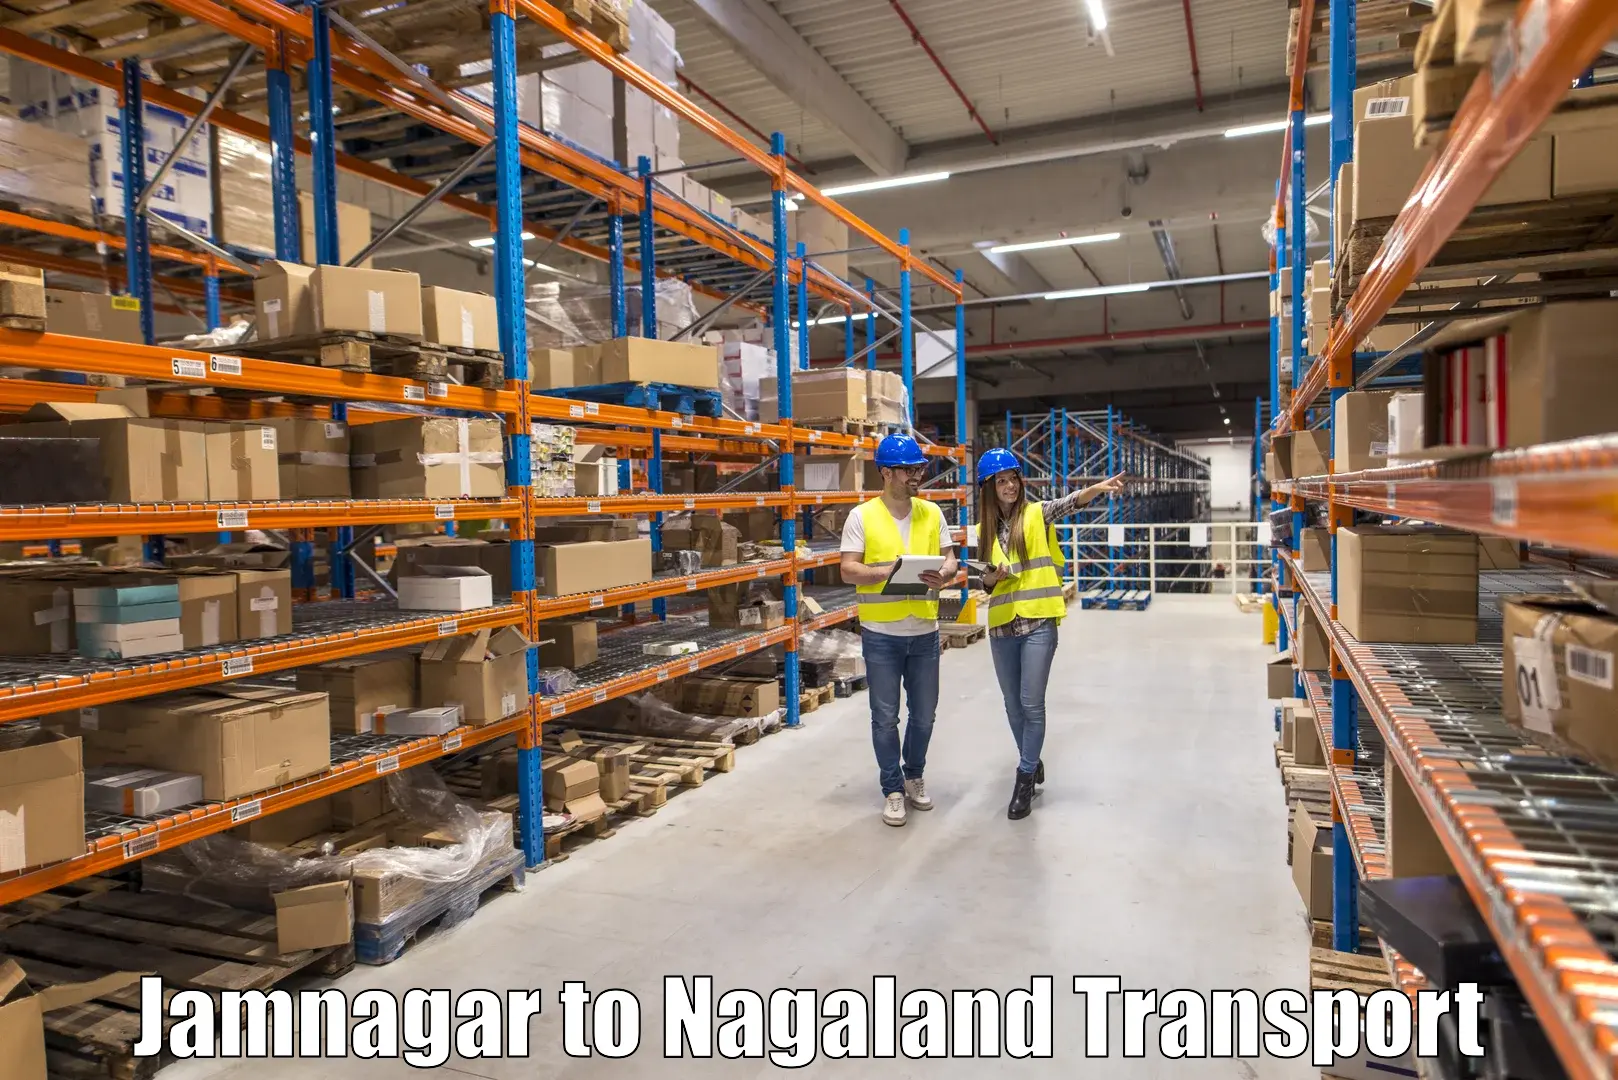 Cargo train transport services Jamnagar to Nagaland